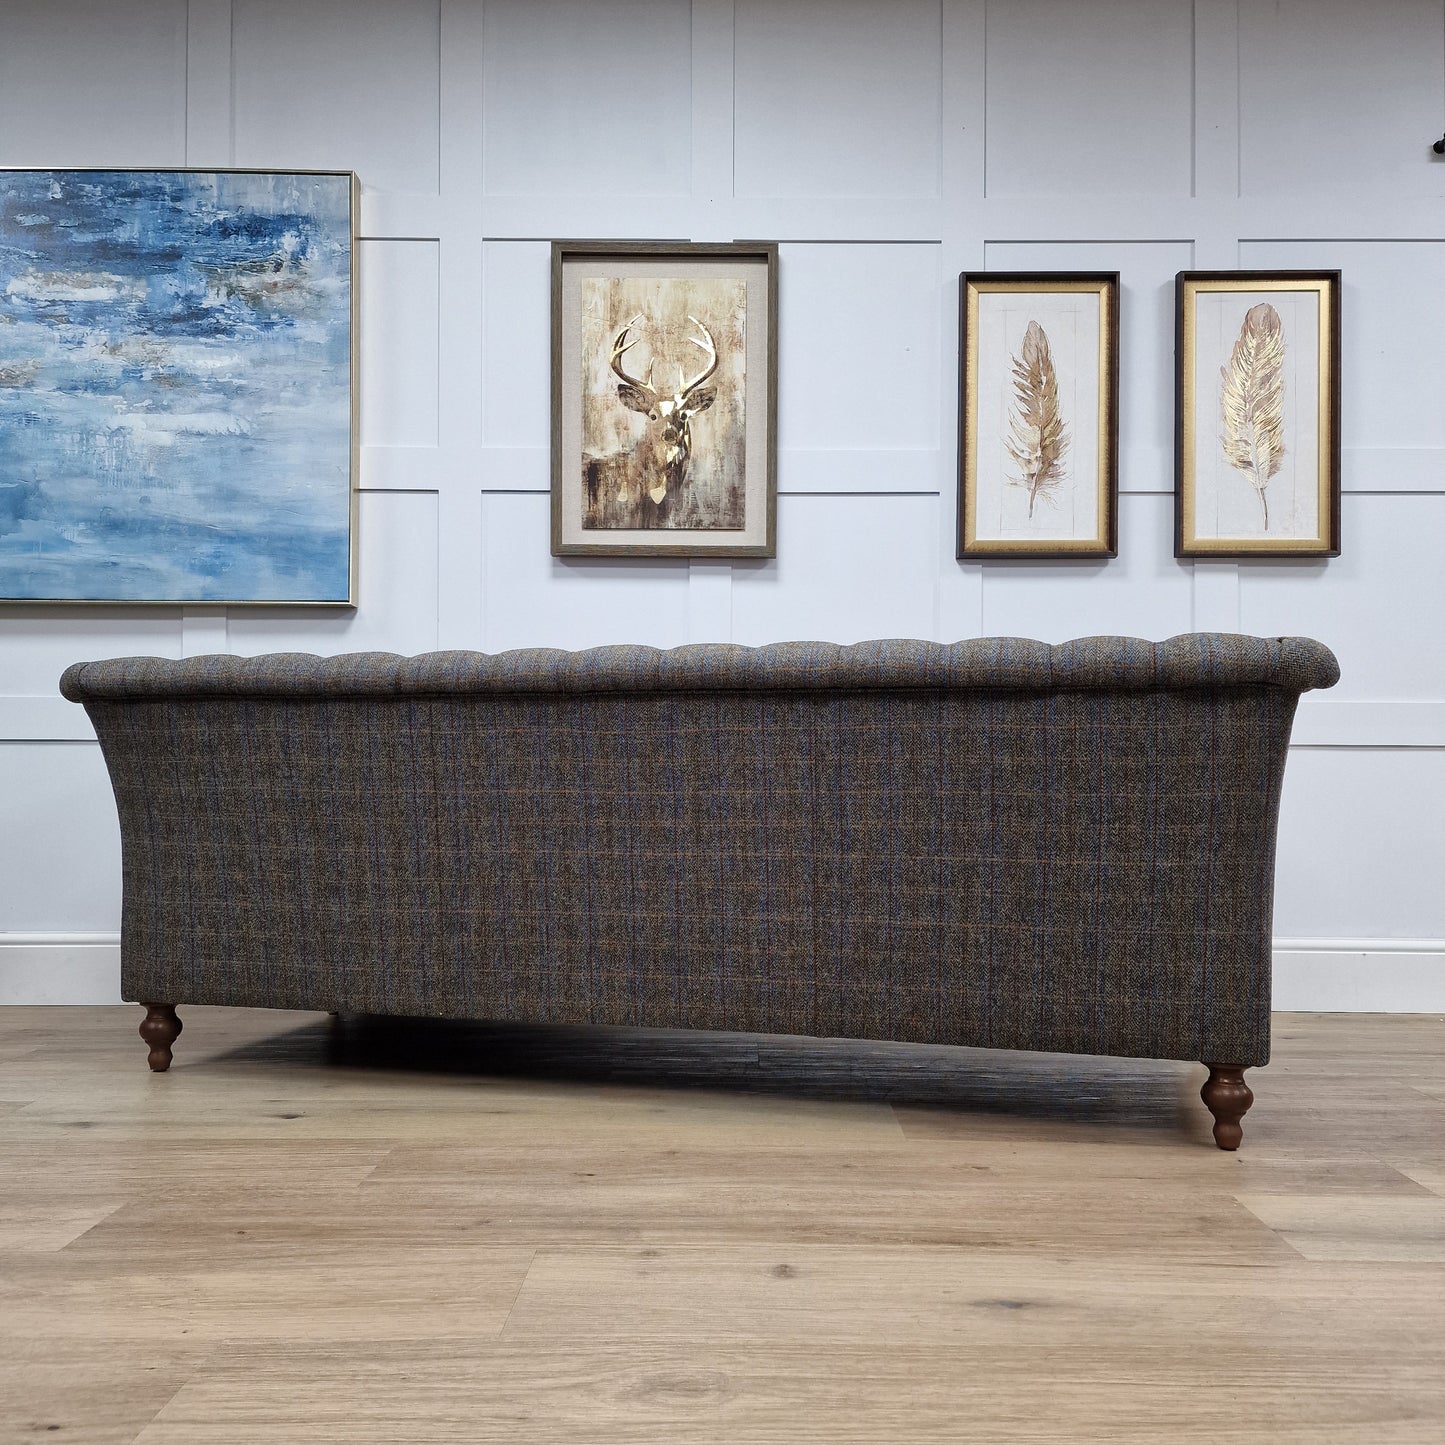 Granby 3 Seater Harris Tweed Sofa - Grey and Blue Herringbone - Rydan Interiors